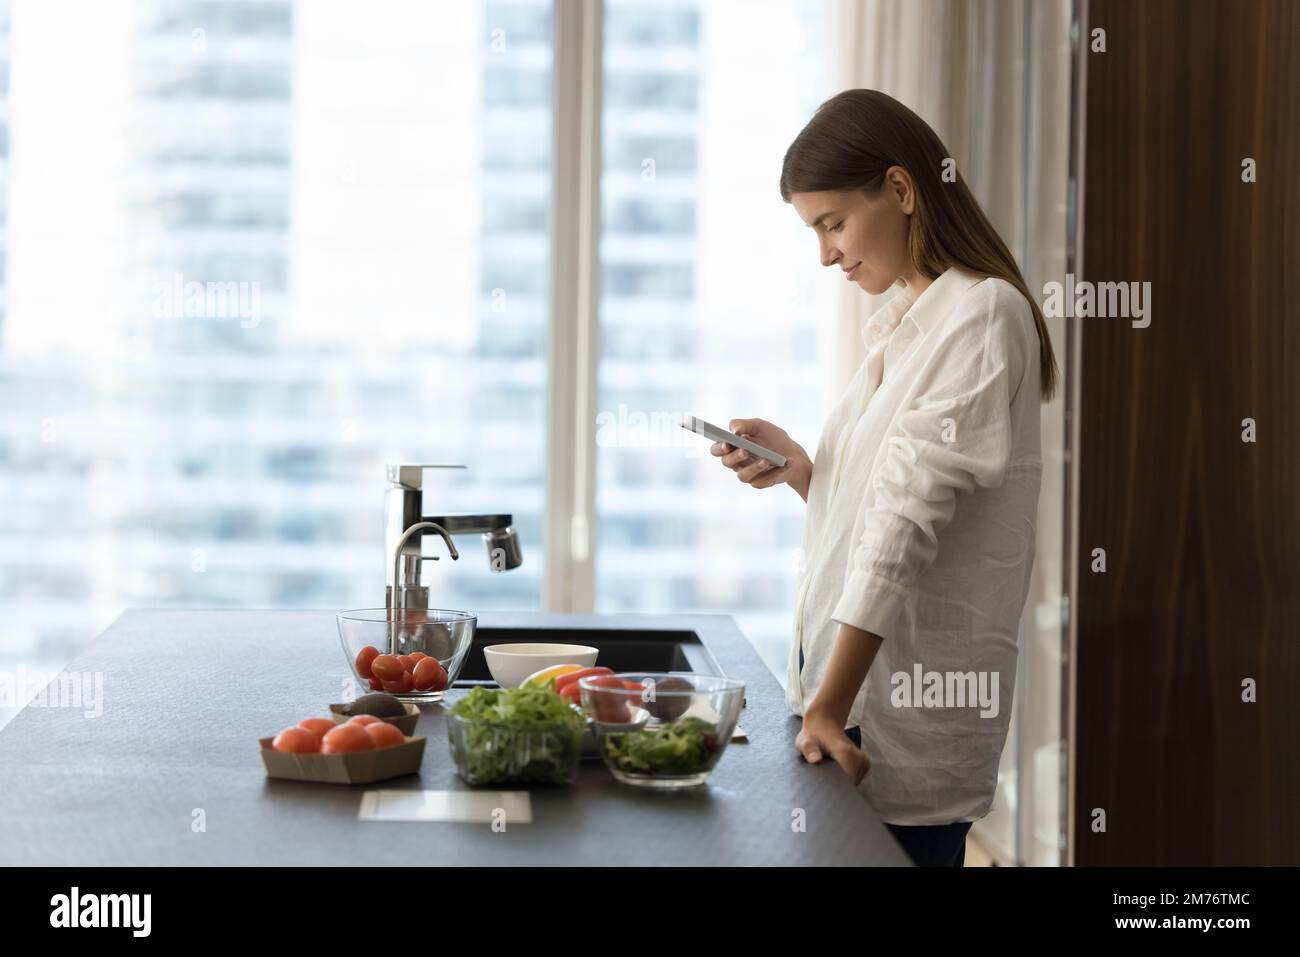 Mujer joven que usa smartphone en la cocina mientras cocina ensalada vegetariana Foto de stock